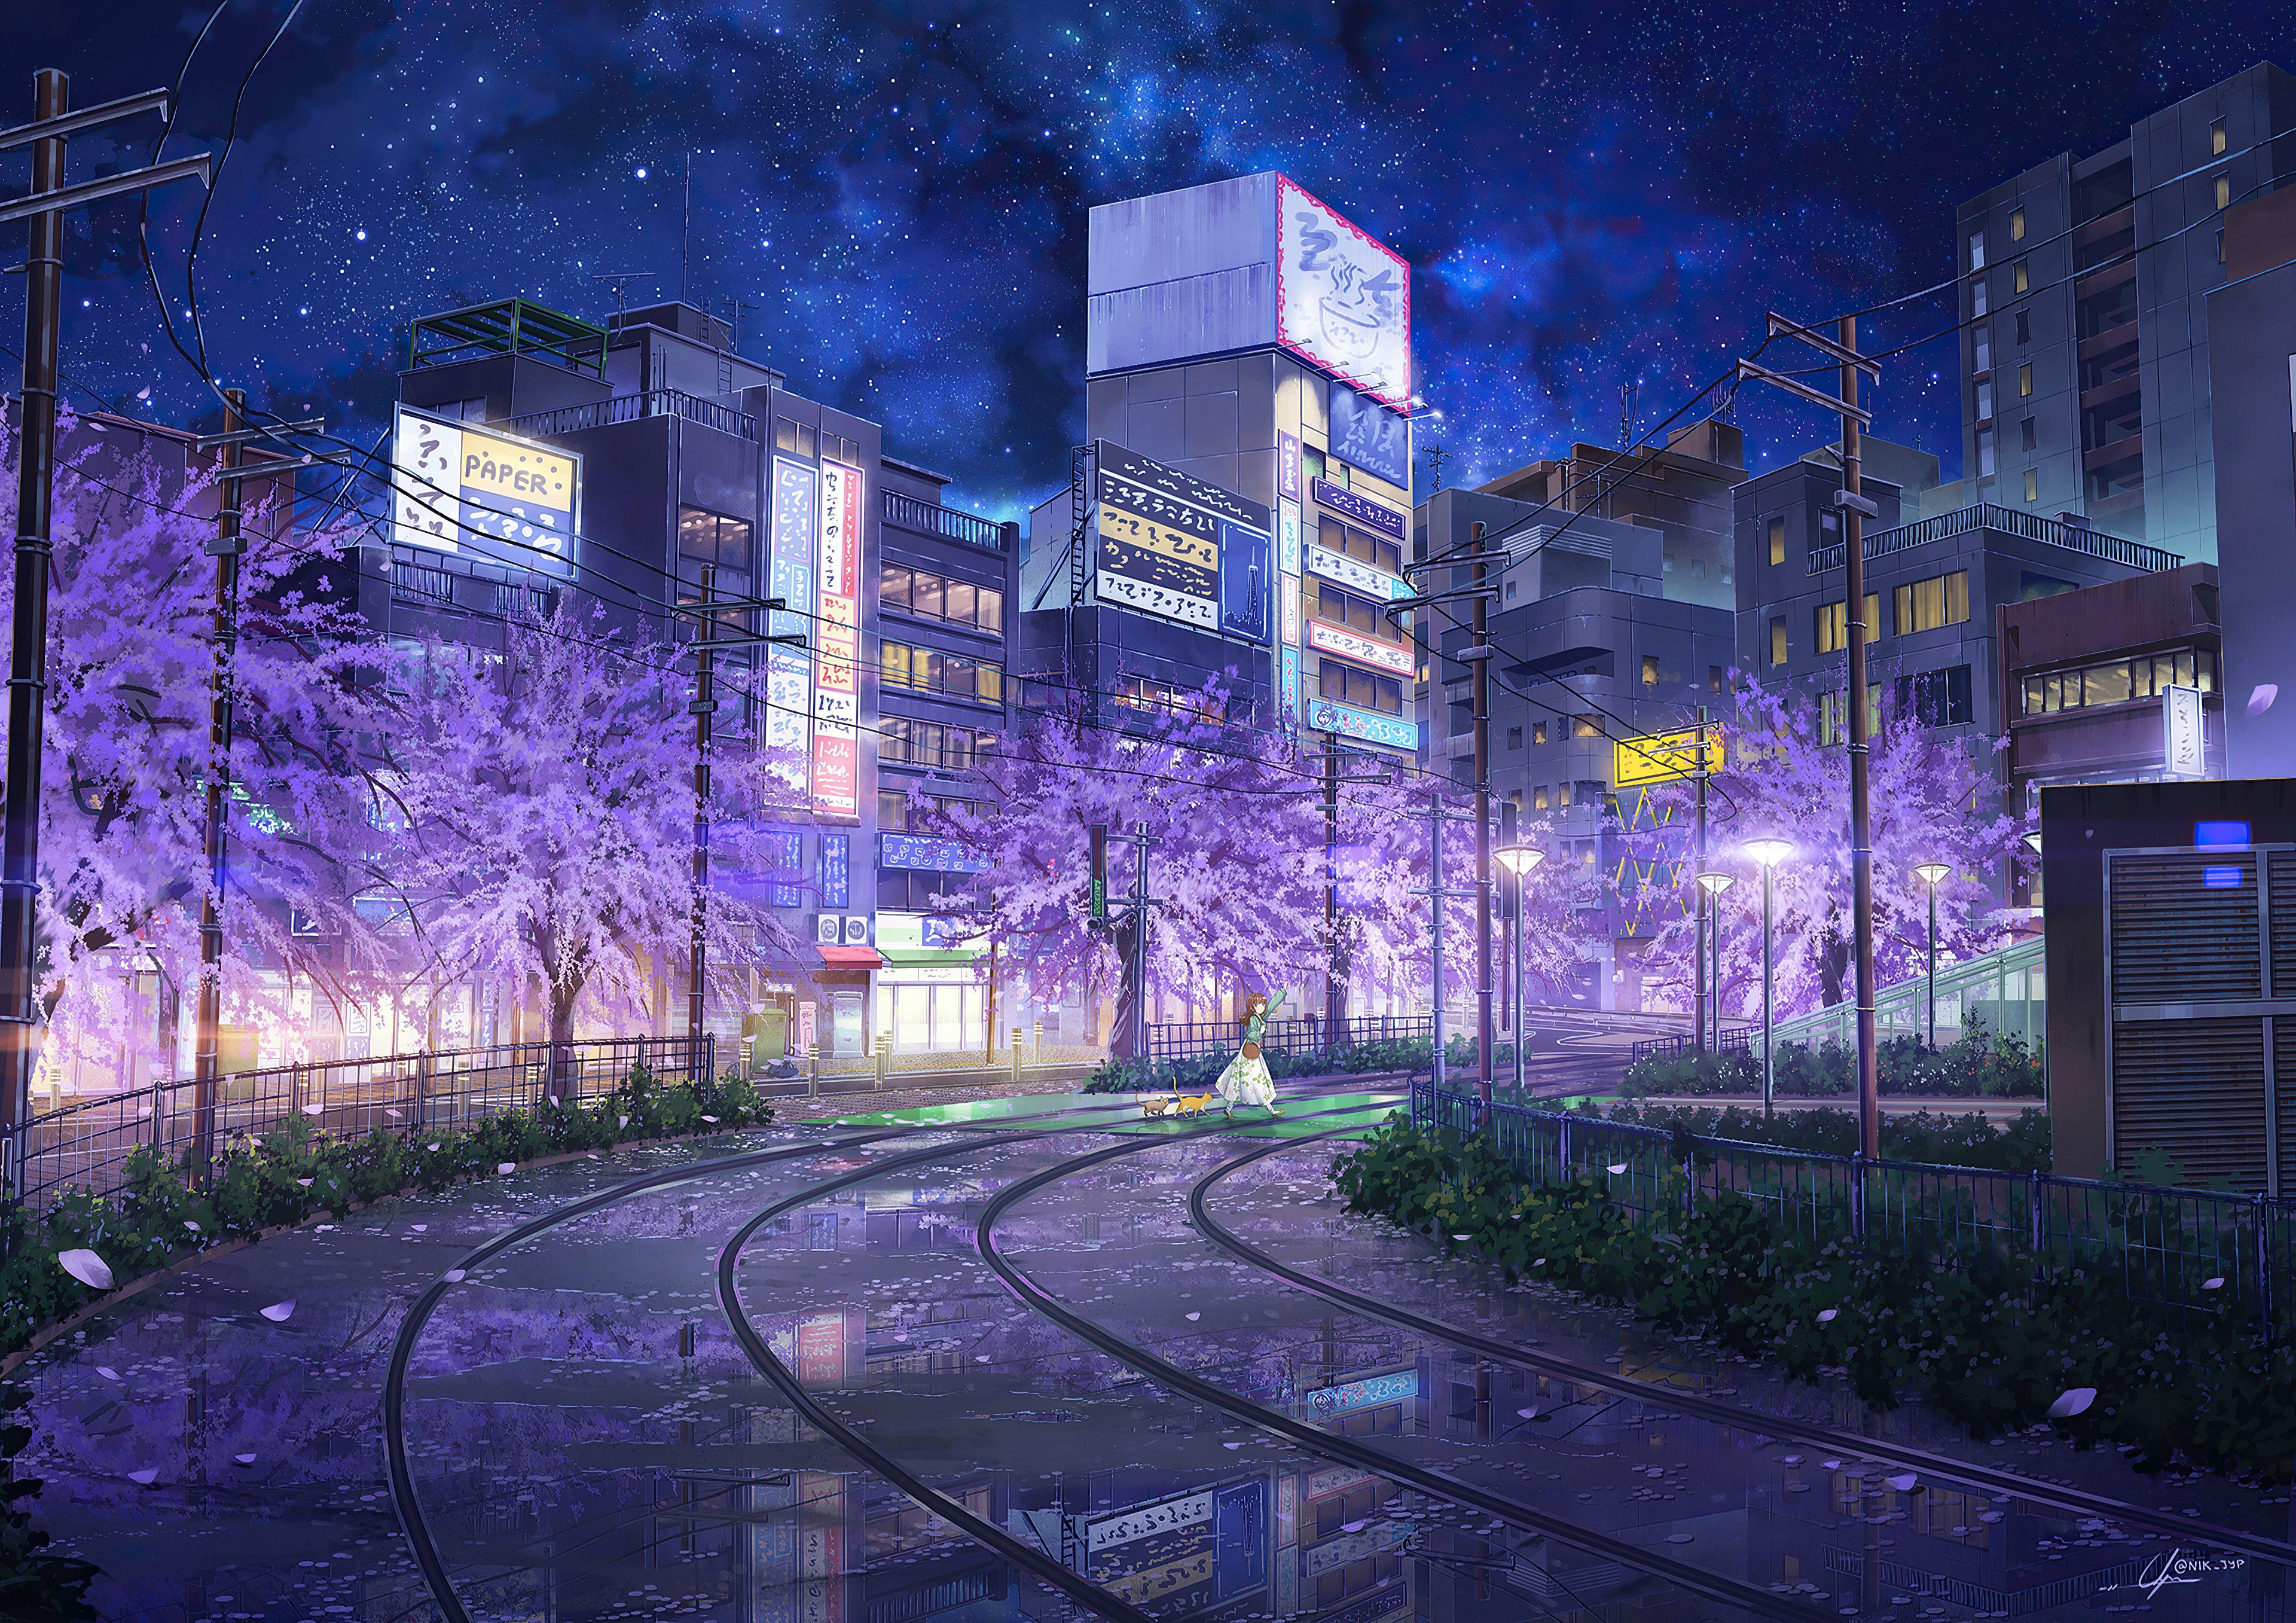 Anime Night Street Wallpapers là bộ sưu tập hình nền tuyệt đẹp về các con phố đầy ấn tượng vào ban đêm, với những điểm nhấn là những nhân vật hoạt hình ngộ nghĩnh và dễ thương. Hãy để mình bị cuốn hút bởi bầu không khí tràn ngập sức sống của Anime Night Street nhé!